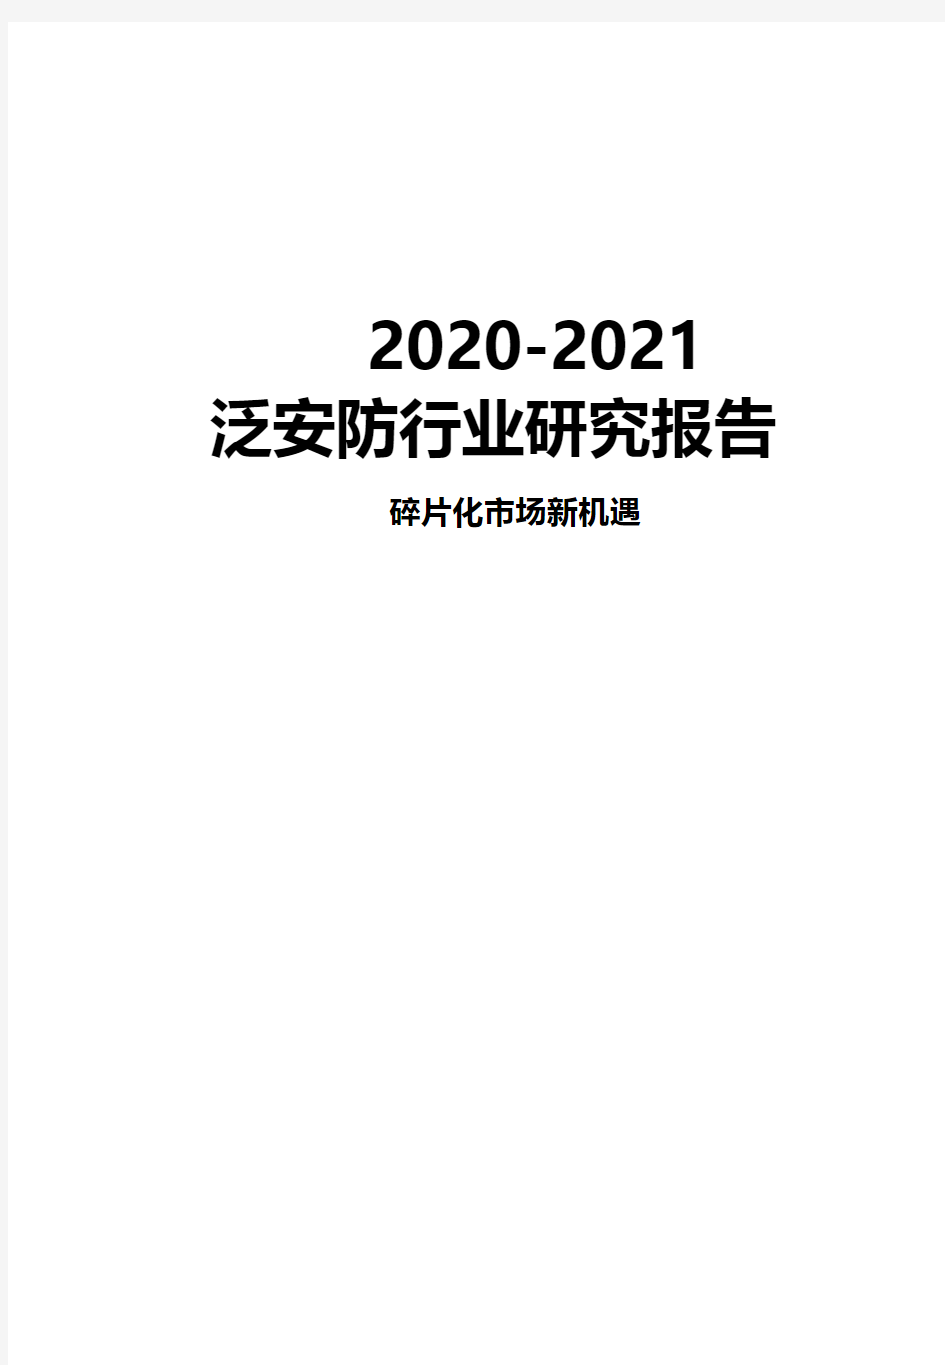 2020-2021年泛安防行业研究报告碎片化市场新机遇